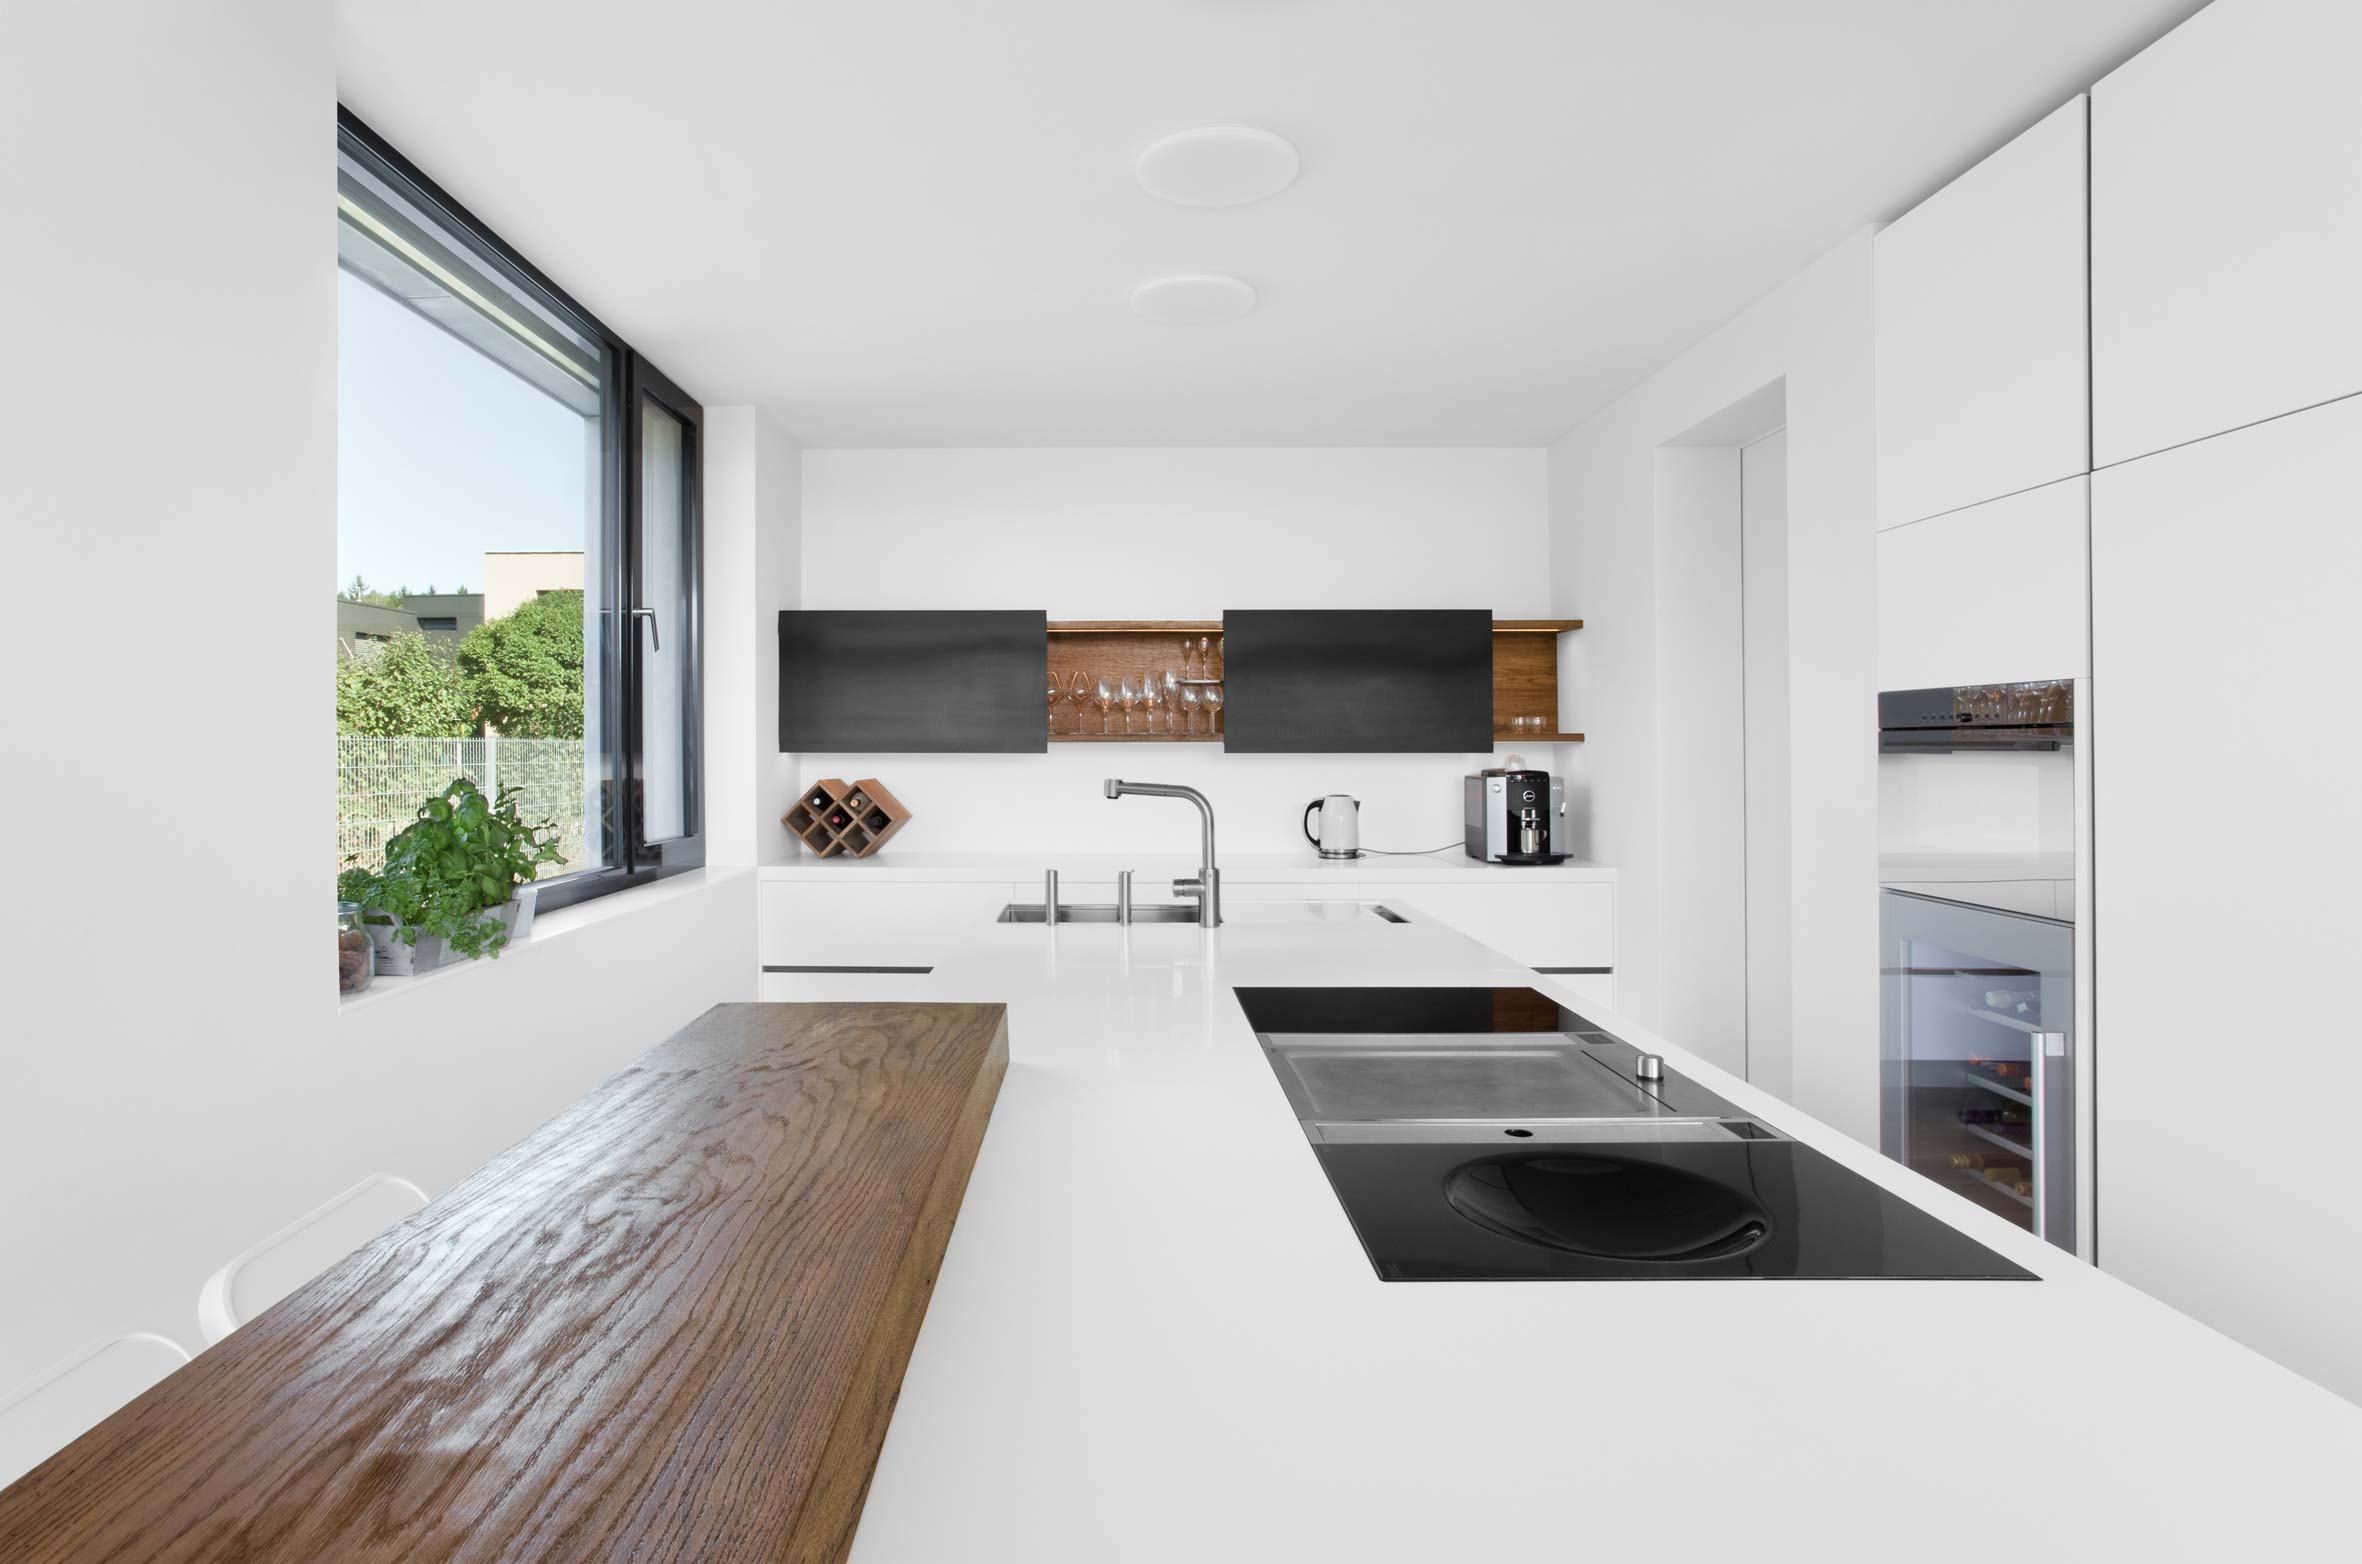 plan 3 kitchens / Architecture in detail / Luxury kitchen